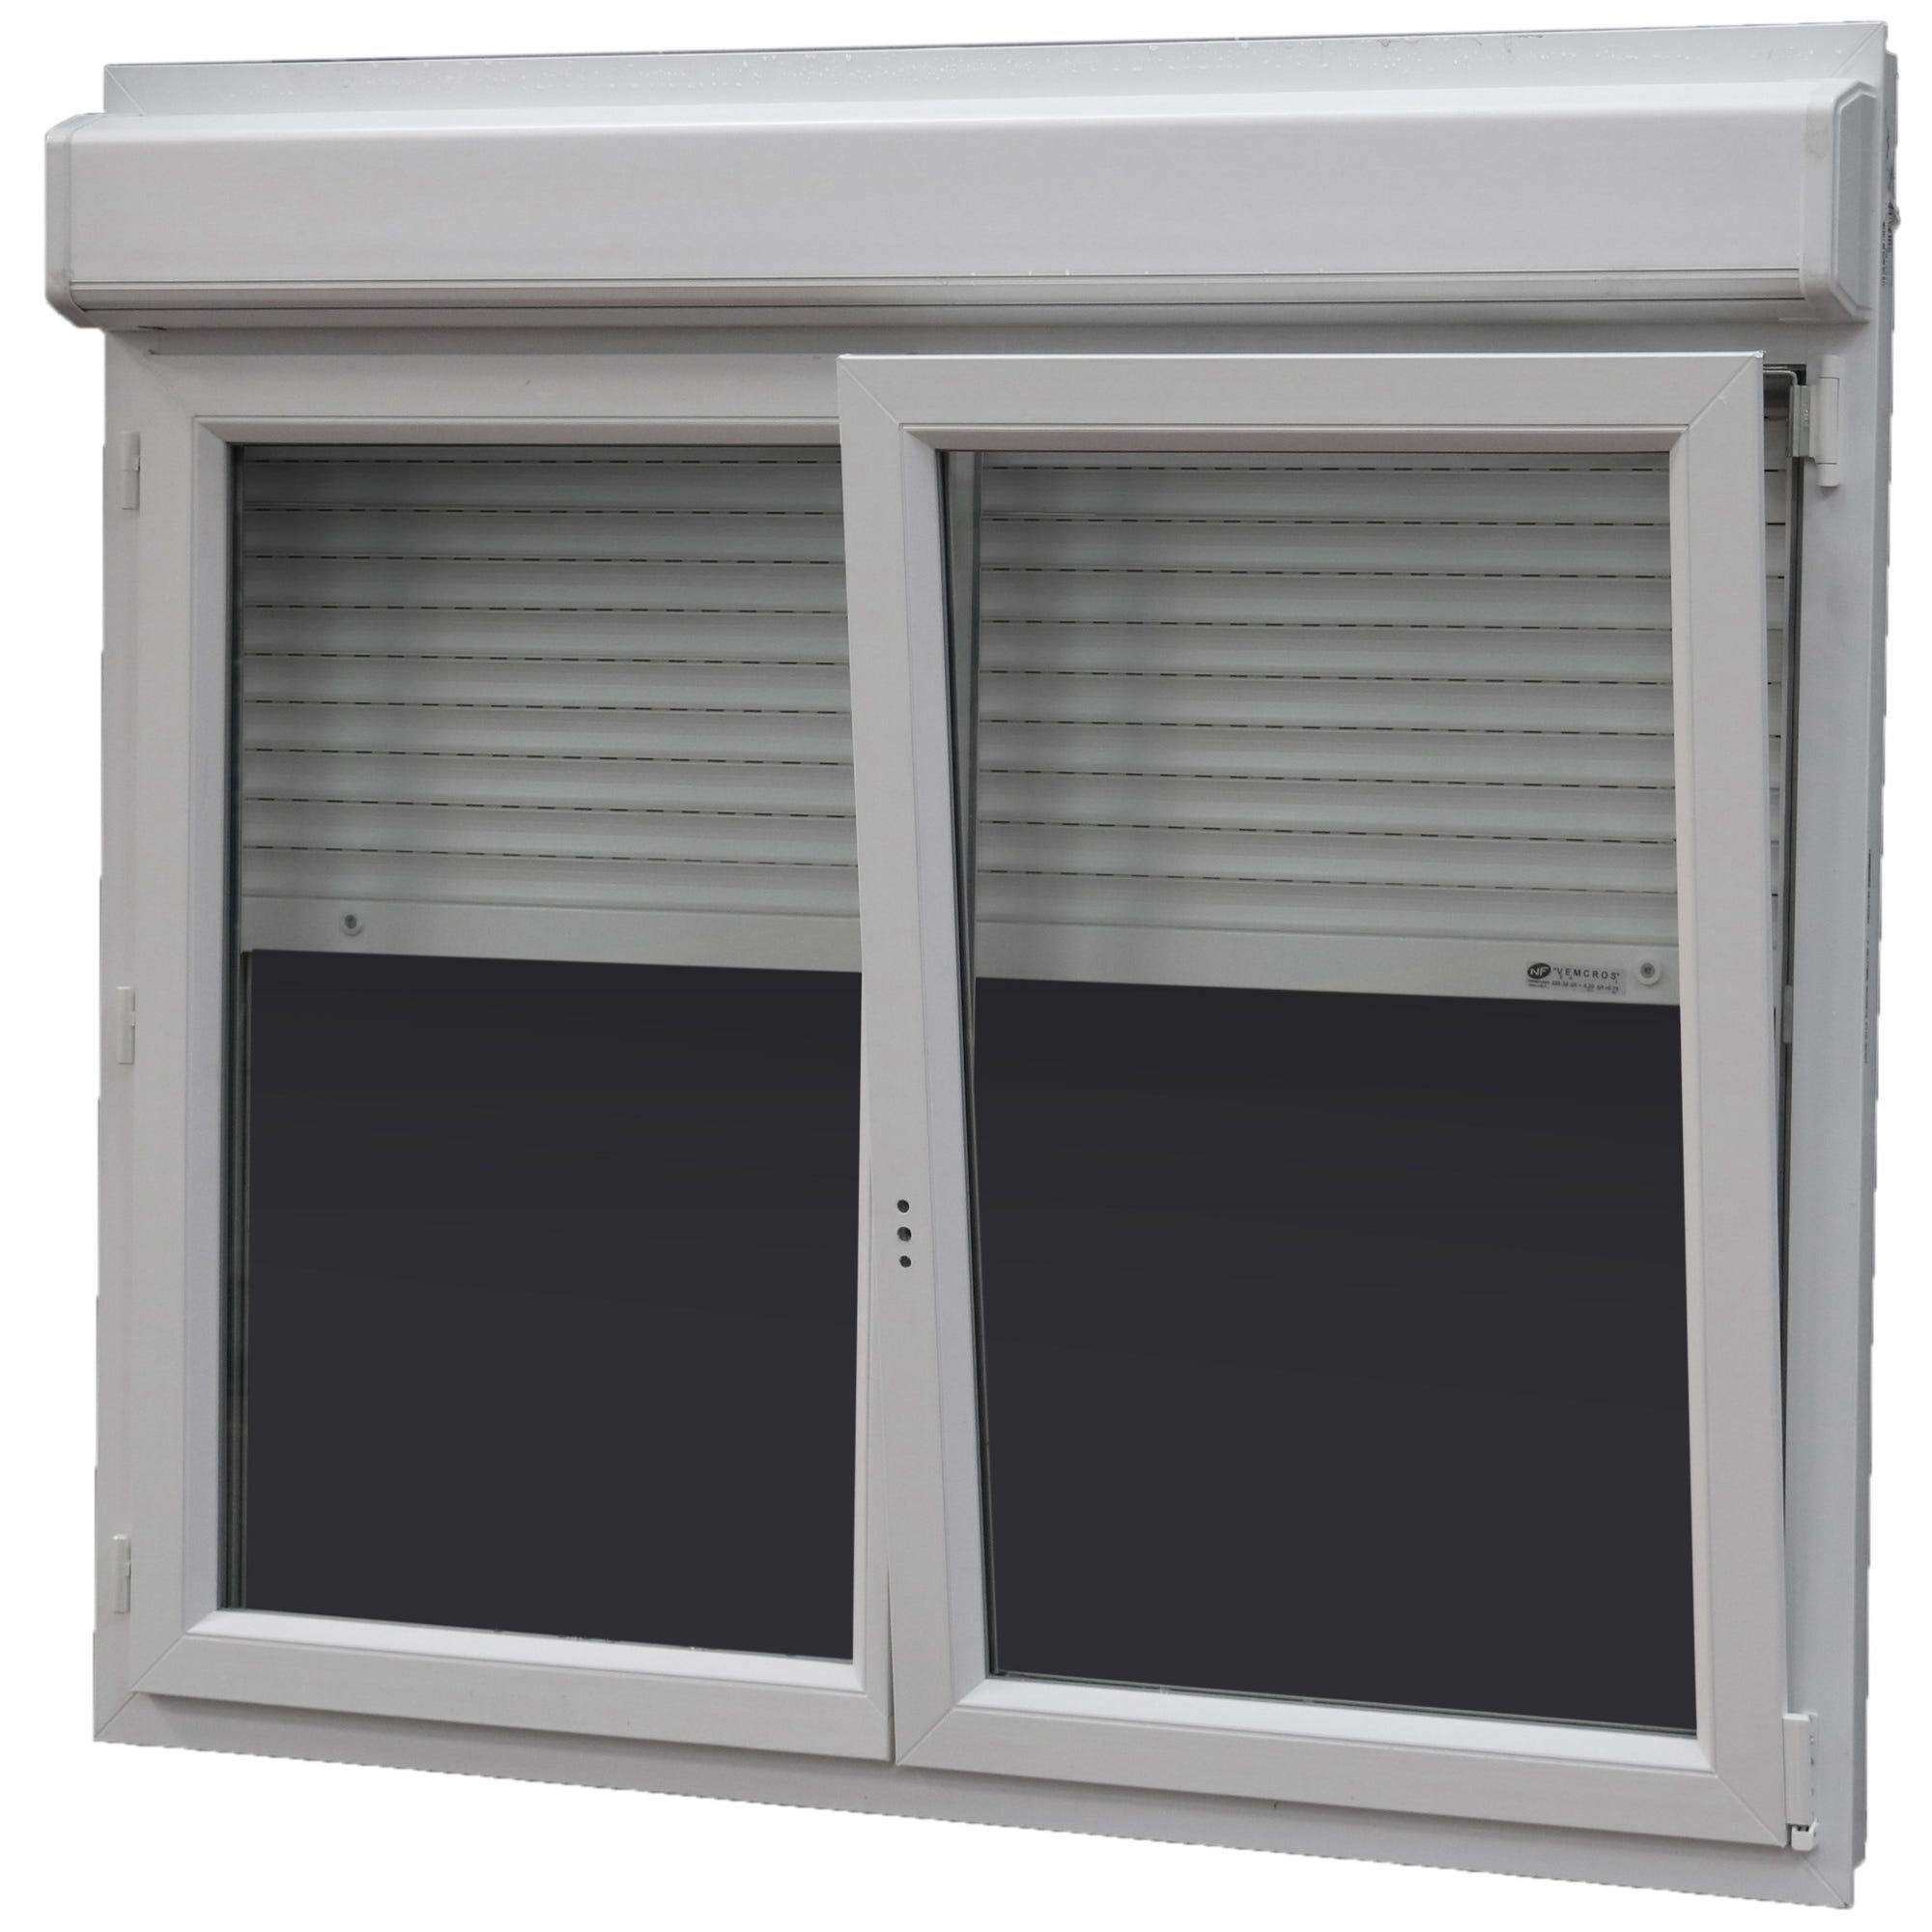 Fenêtre PVC H.115 x l.120 cm oscillo-battant 2 vantaux avec volet roulant intégré blanc 2